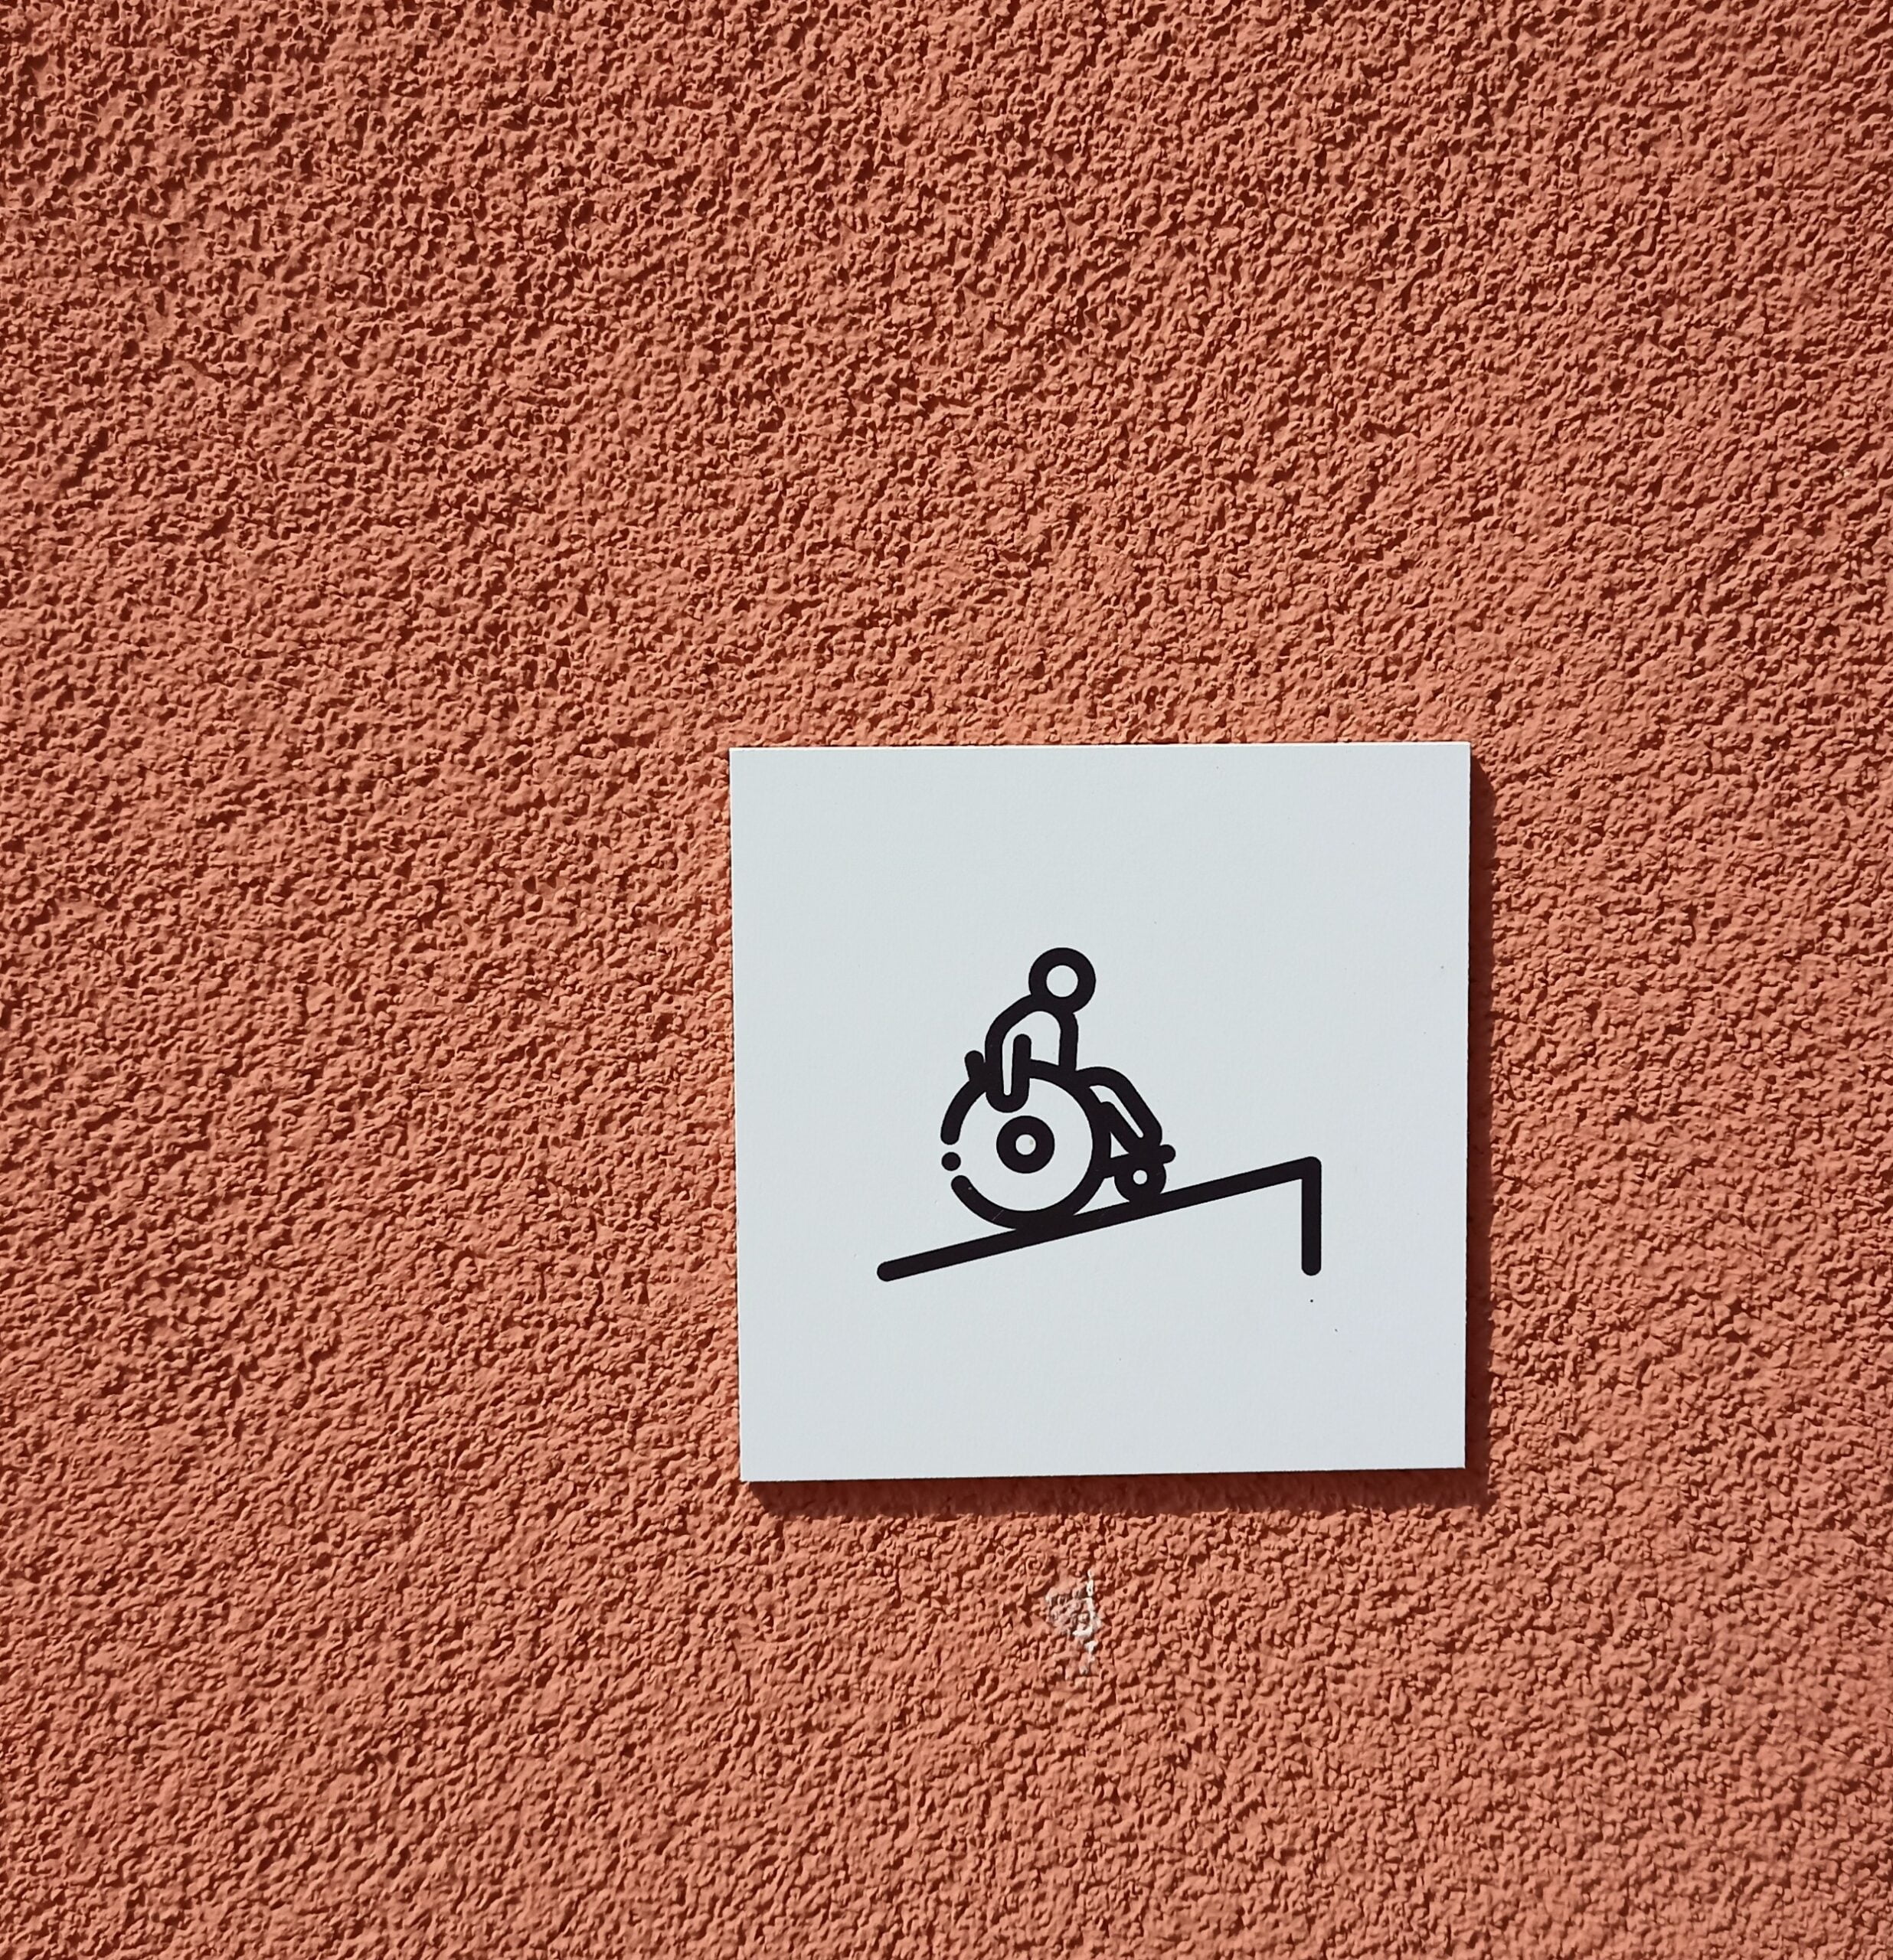 Na ceglastej w kolorze ścianie jasnoszara, kwadratowa tabliczka z czarnym piktogramem osoby na wózku podjeżdżającej na pochylnię.